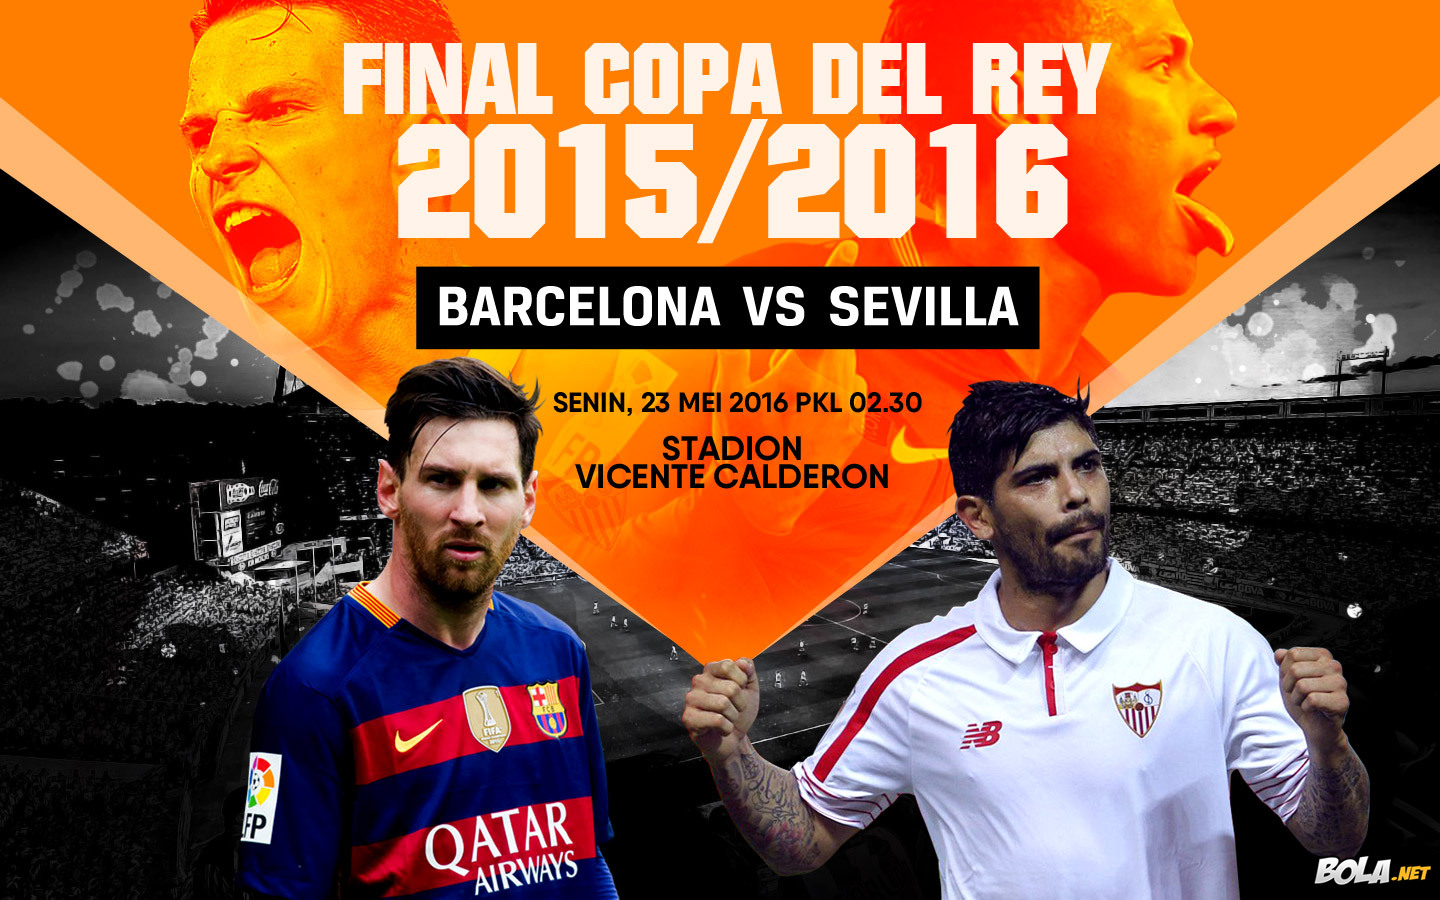 Deskripsi : Wallpaper Final Copa Del Rey 2015/2016, size: 1440x900